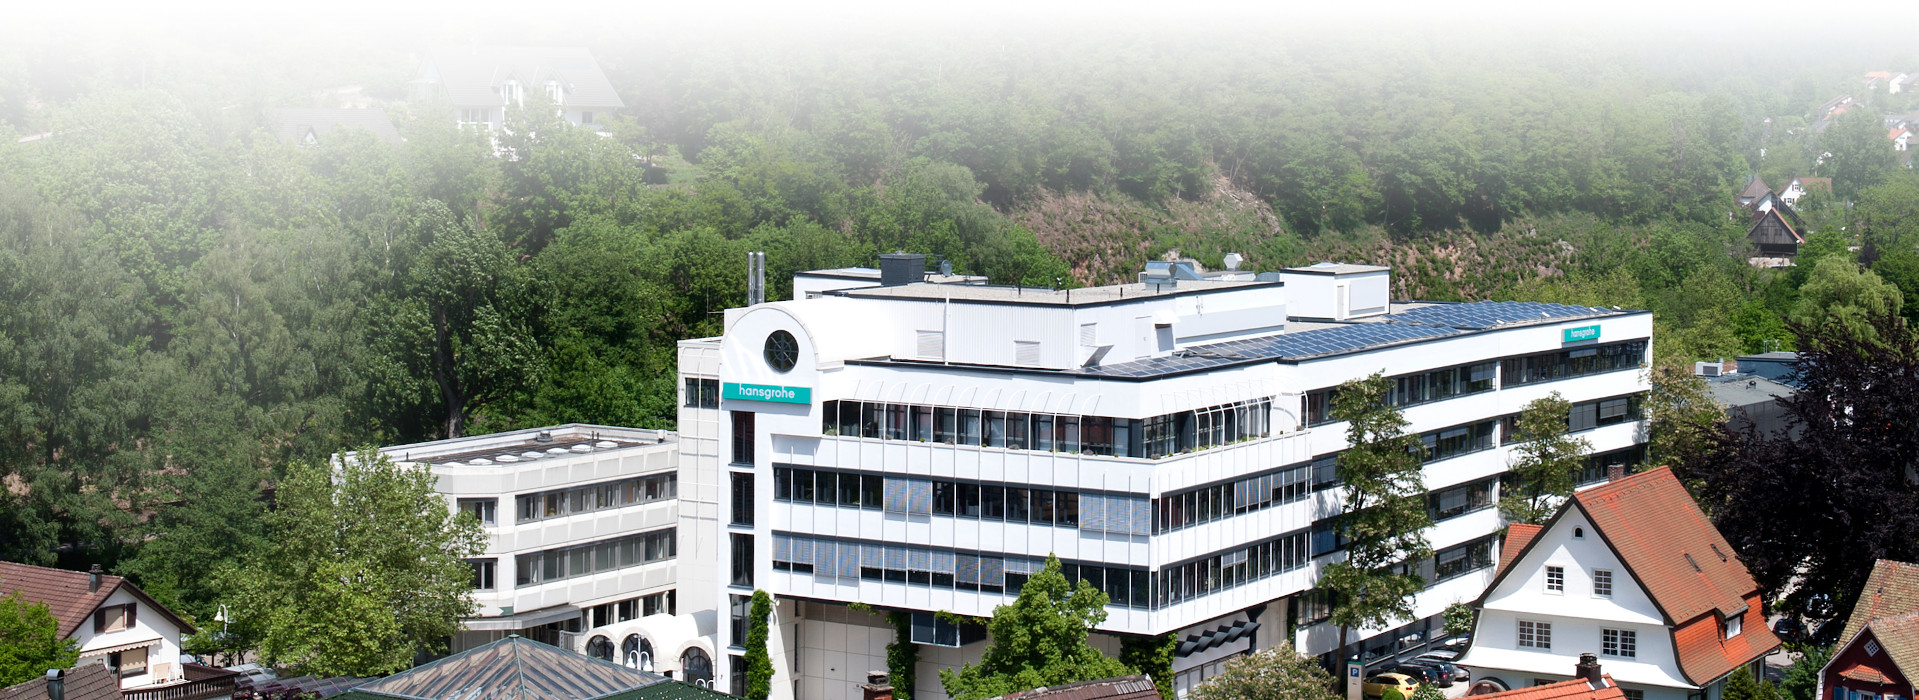 Hauptgebäude des Firmensitzes der Hansgrohe SE in Schiltach. Das Firmenlogo ist außen am Gebäude zu erkennen. Wald im Hintergrund. 